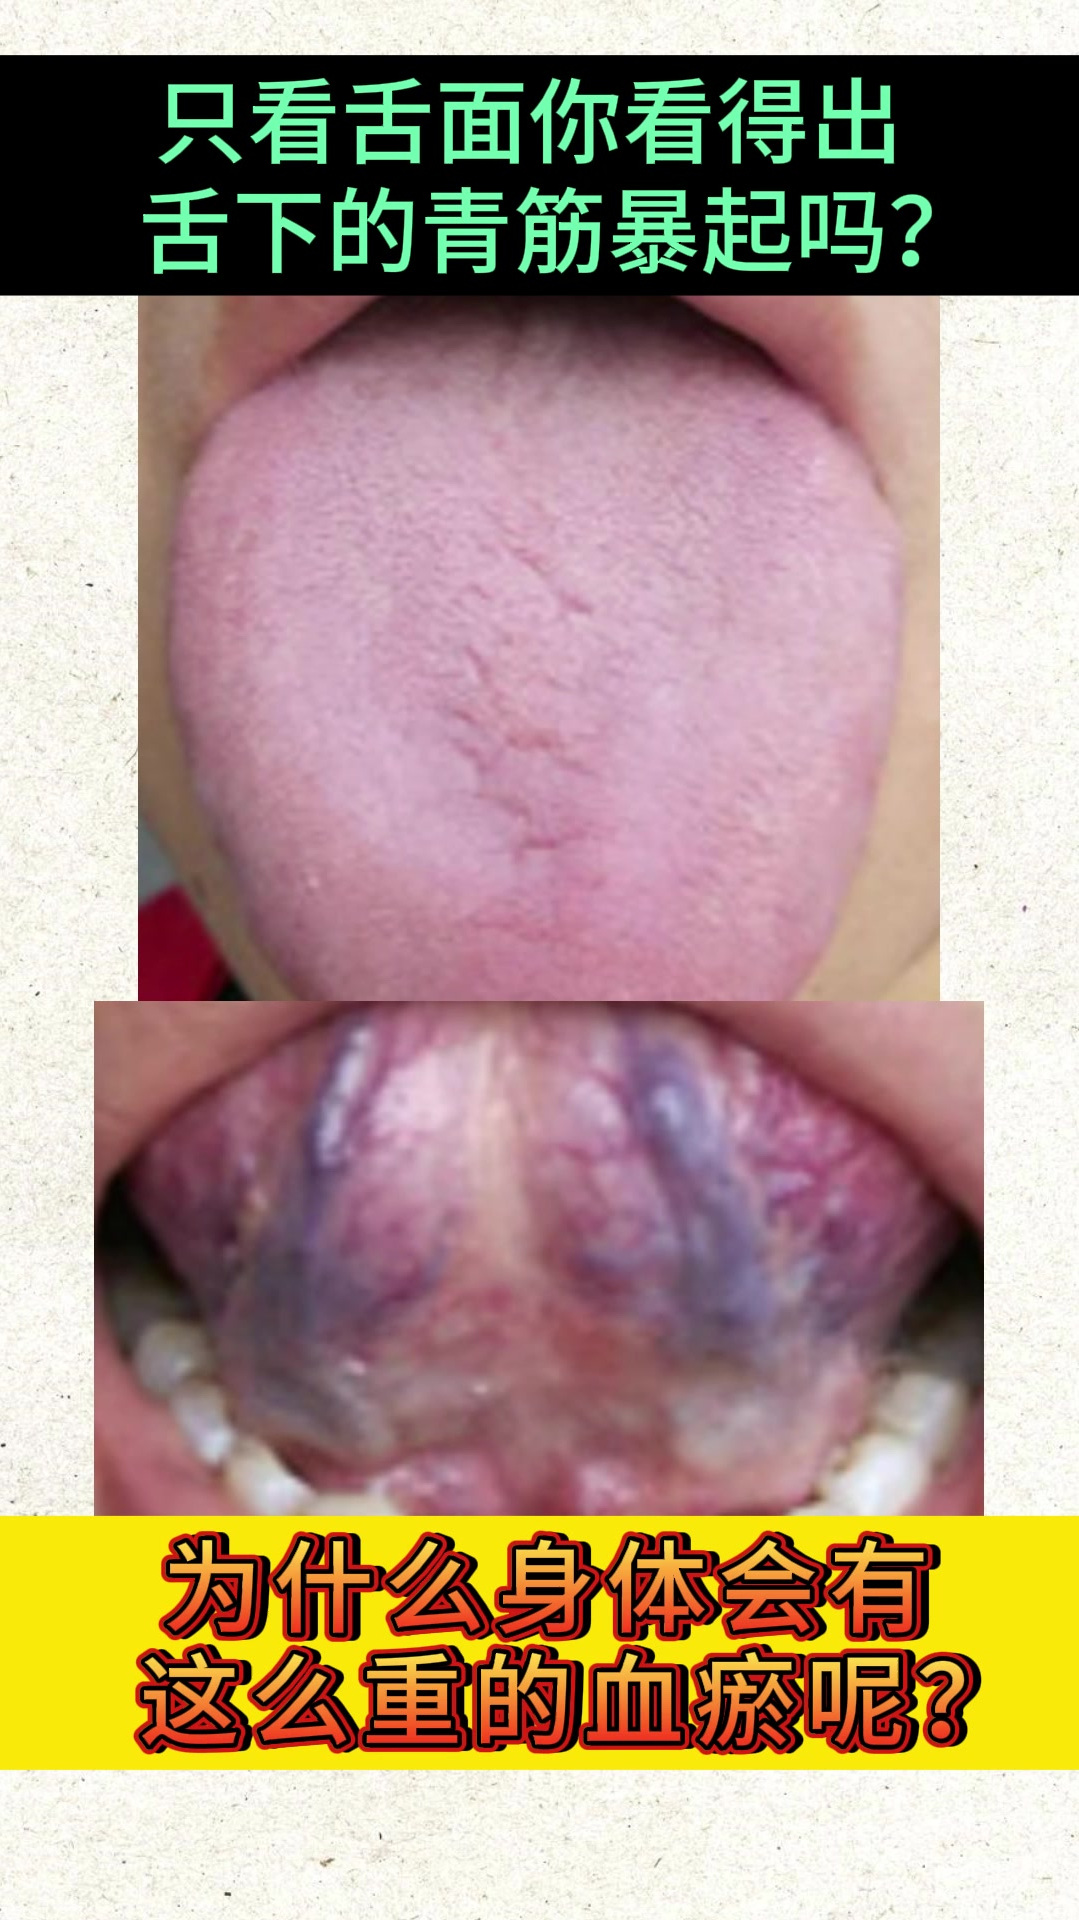 舌下青筋暴起,为什么会有这么重的血瘀?